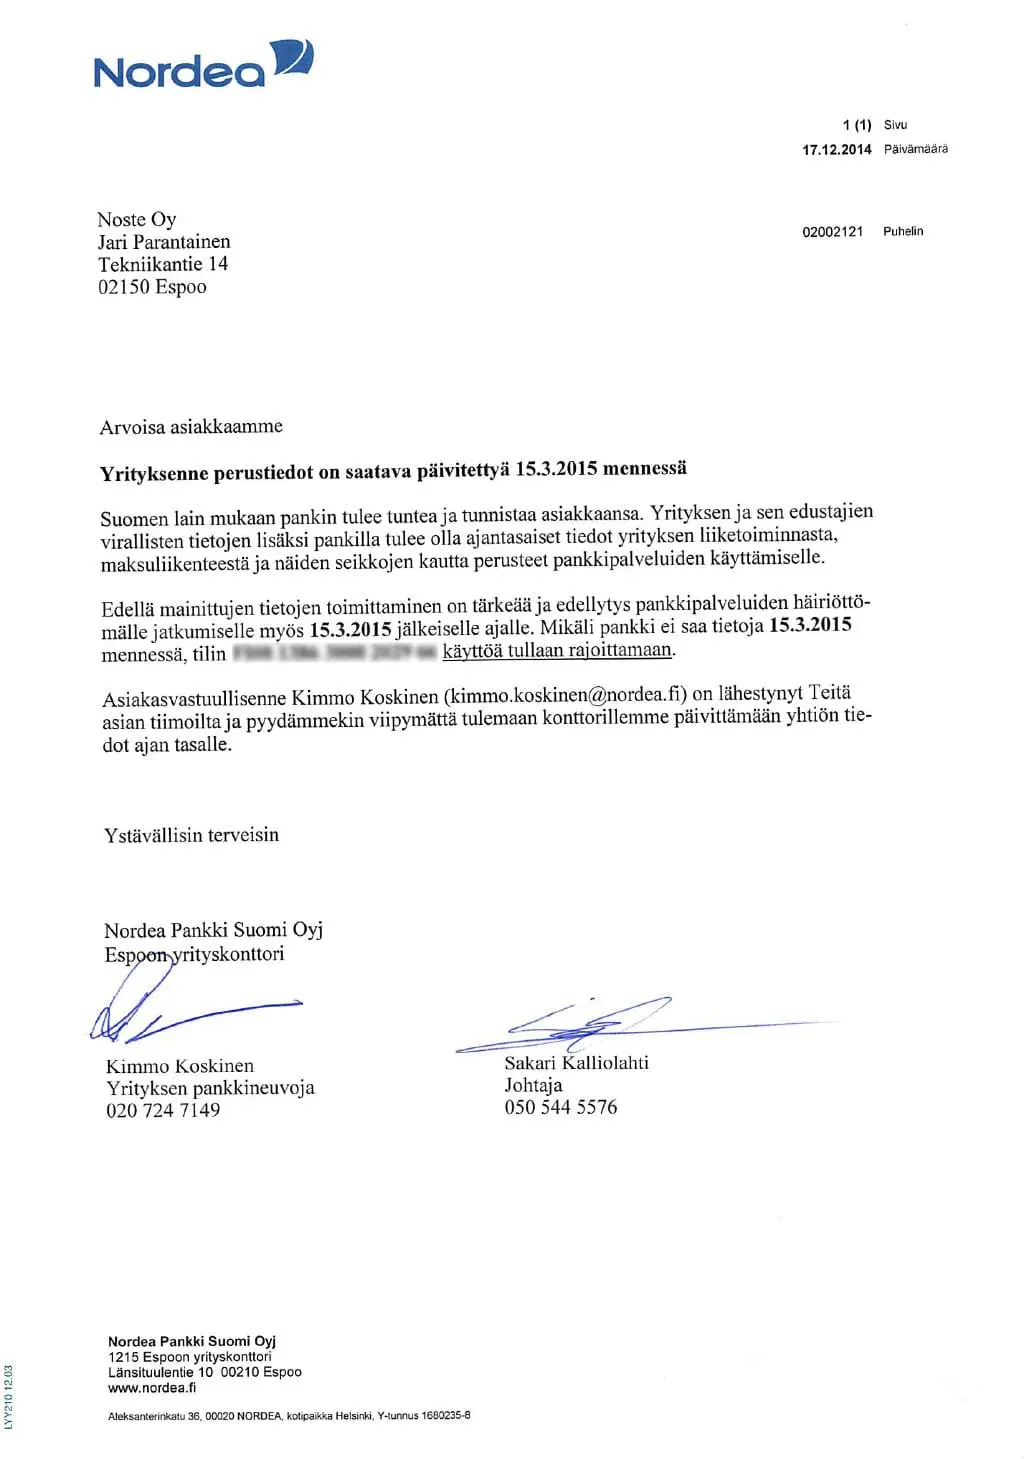 Nordea lähetti uhkauskirjeensä tavalliselta pankin mainospostilta näyttävässä kuoressa.